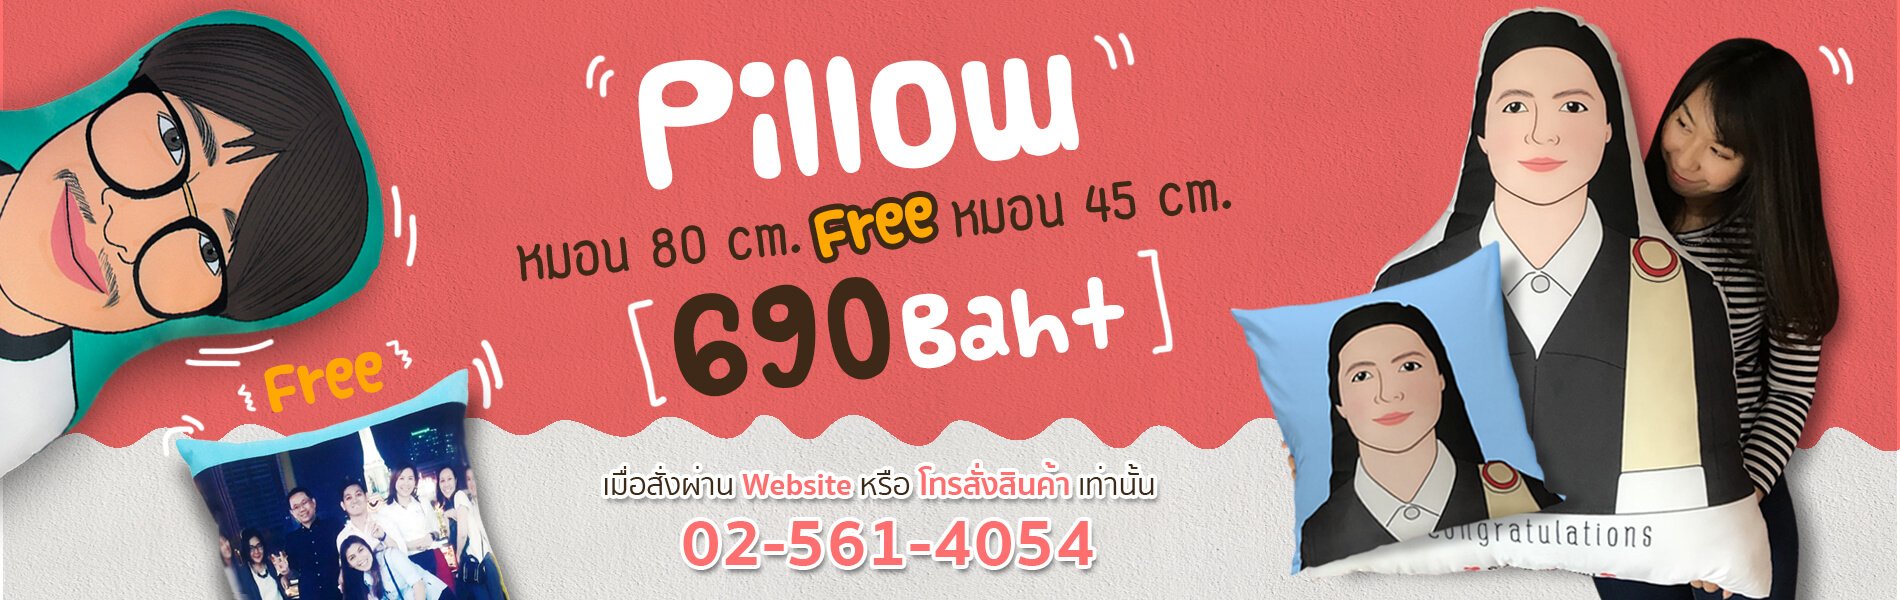 pillow manufacturer bangkok